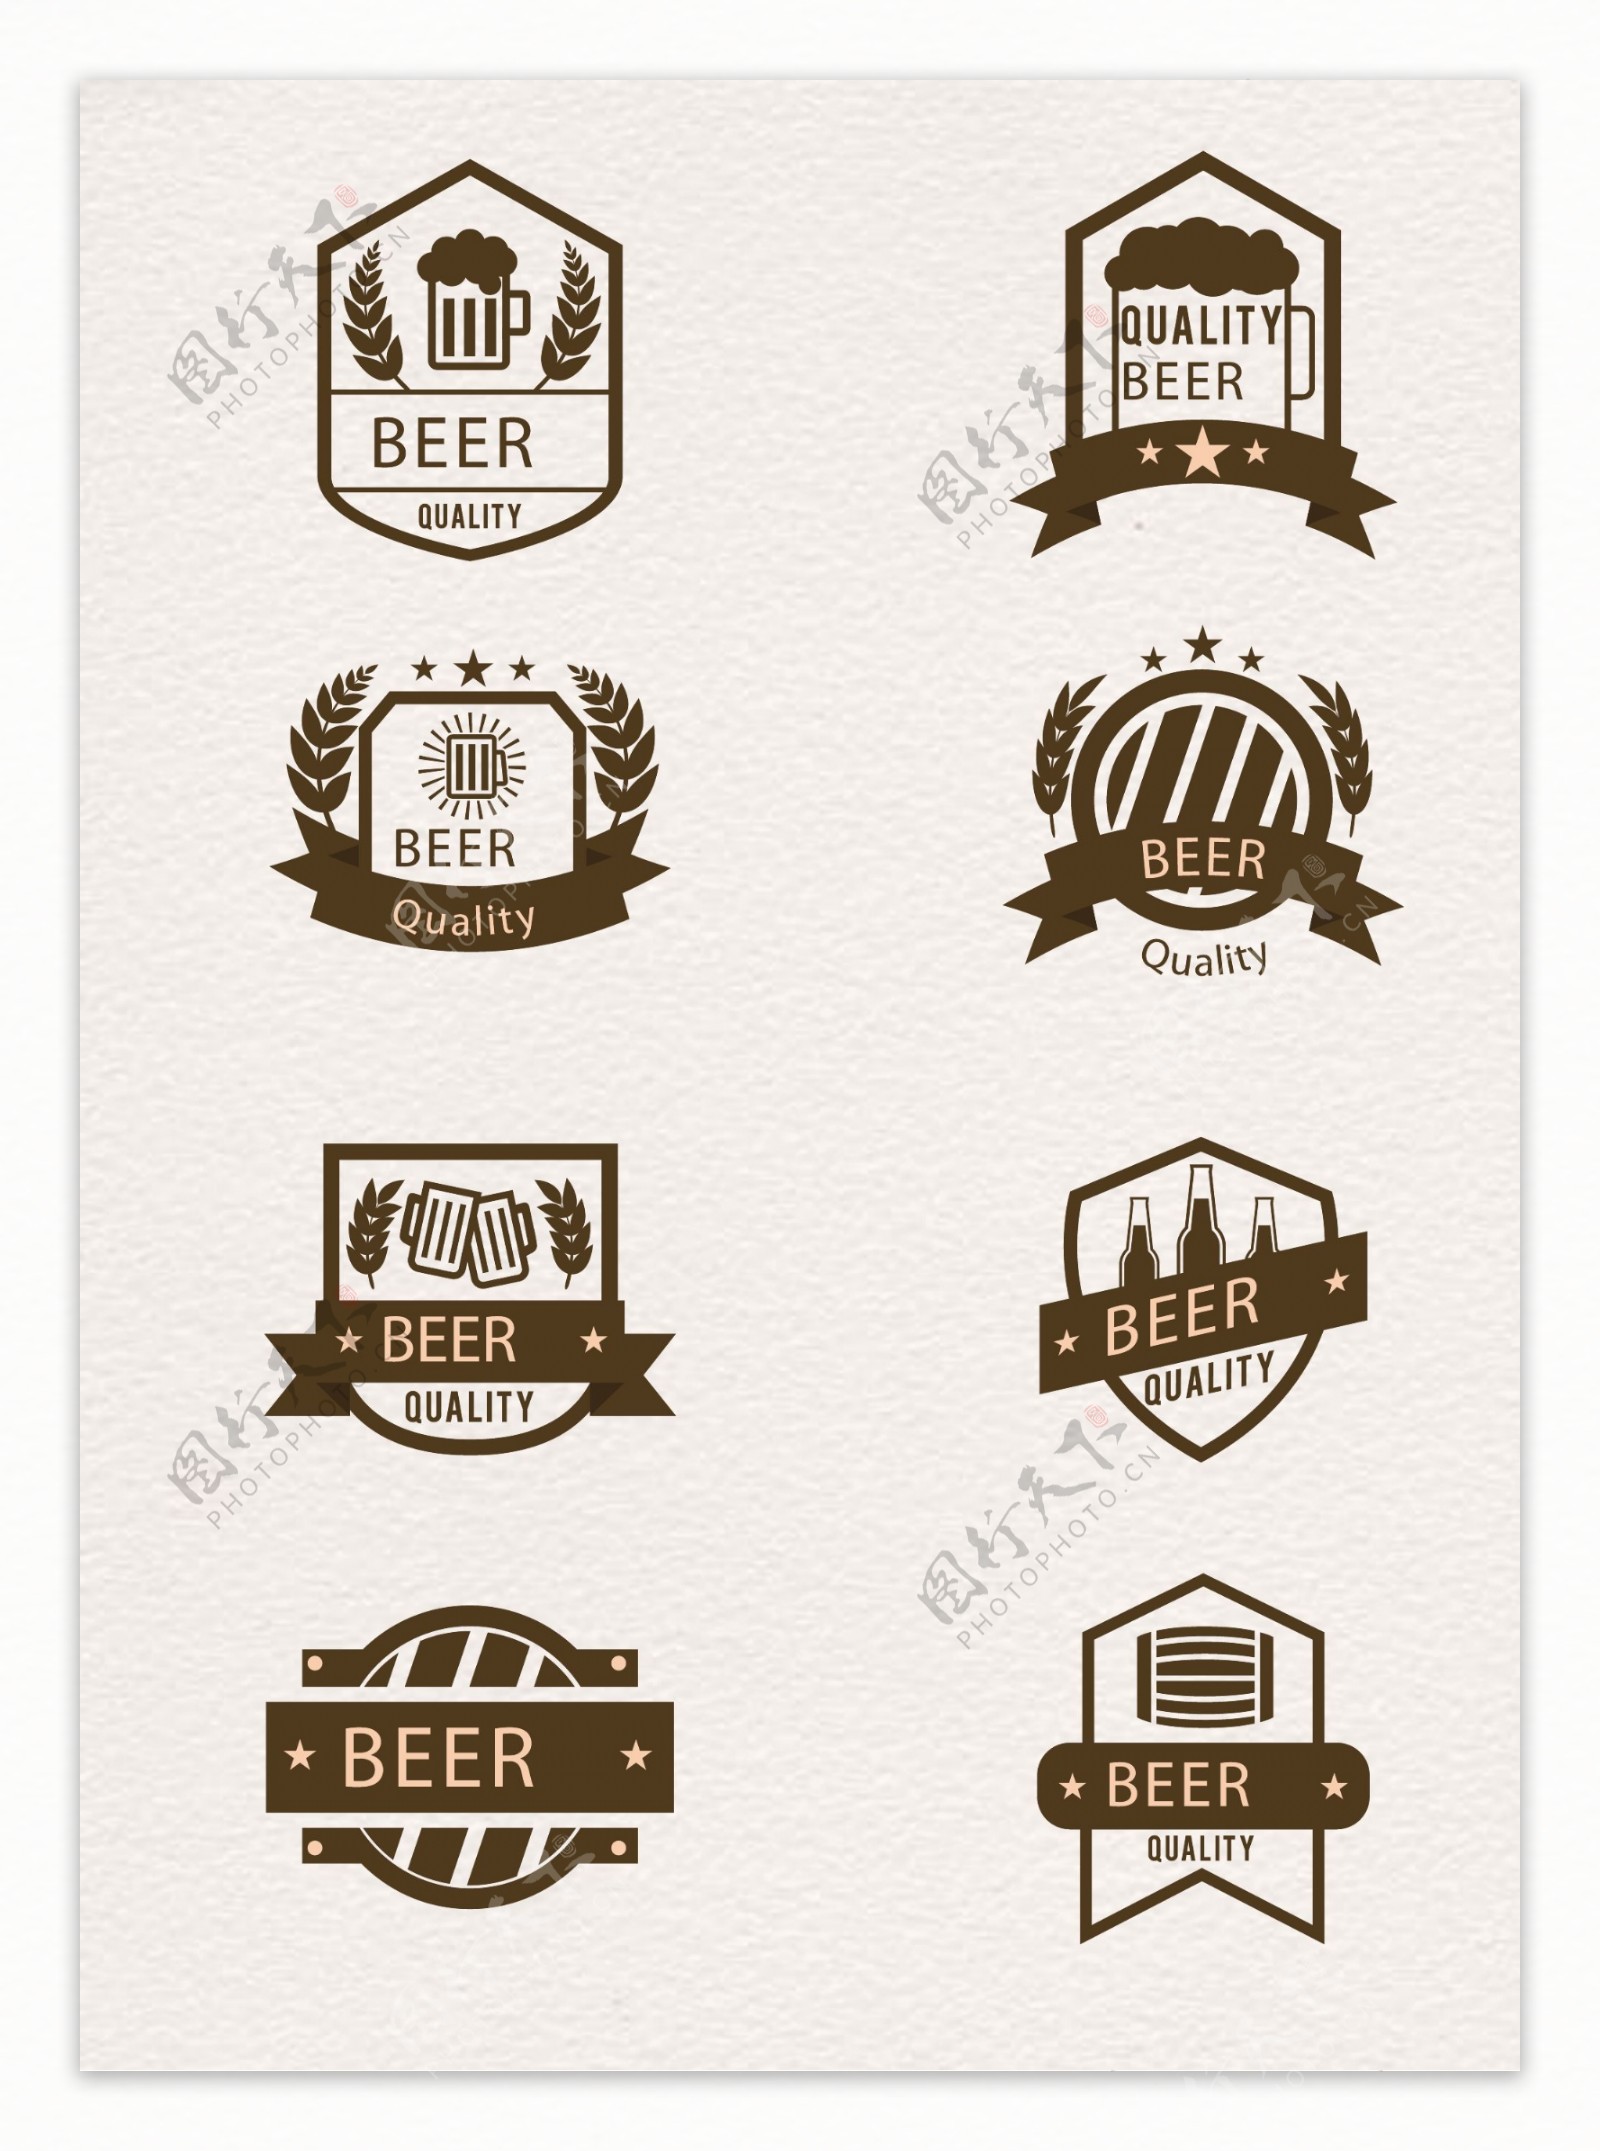 8款优质啤酒徽章矢量素材